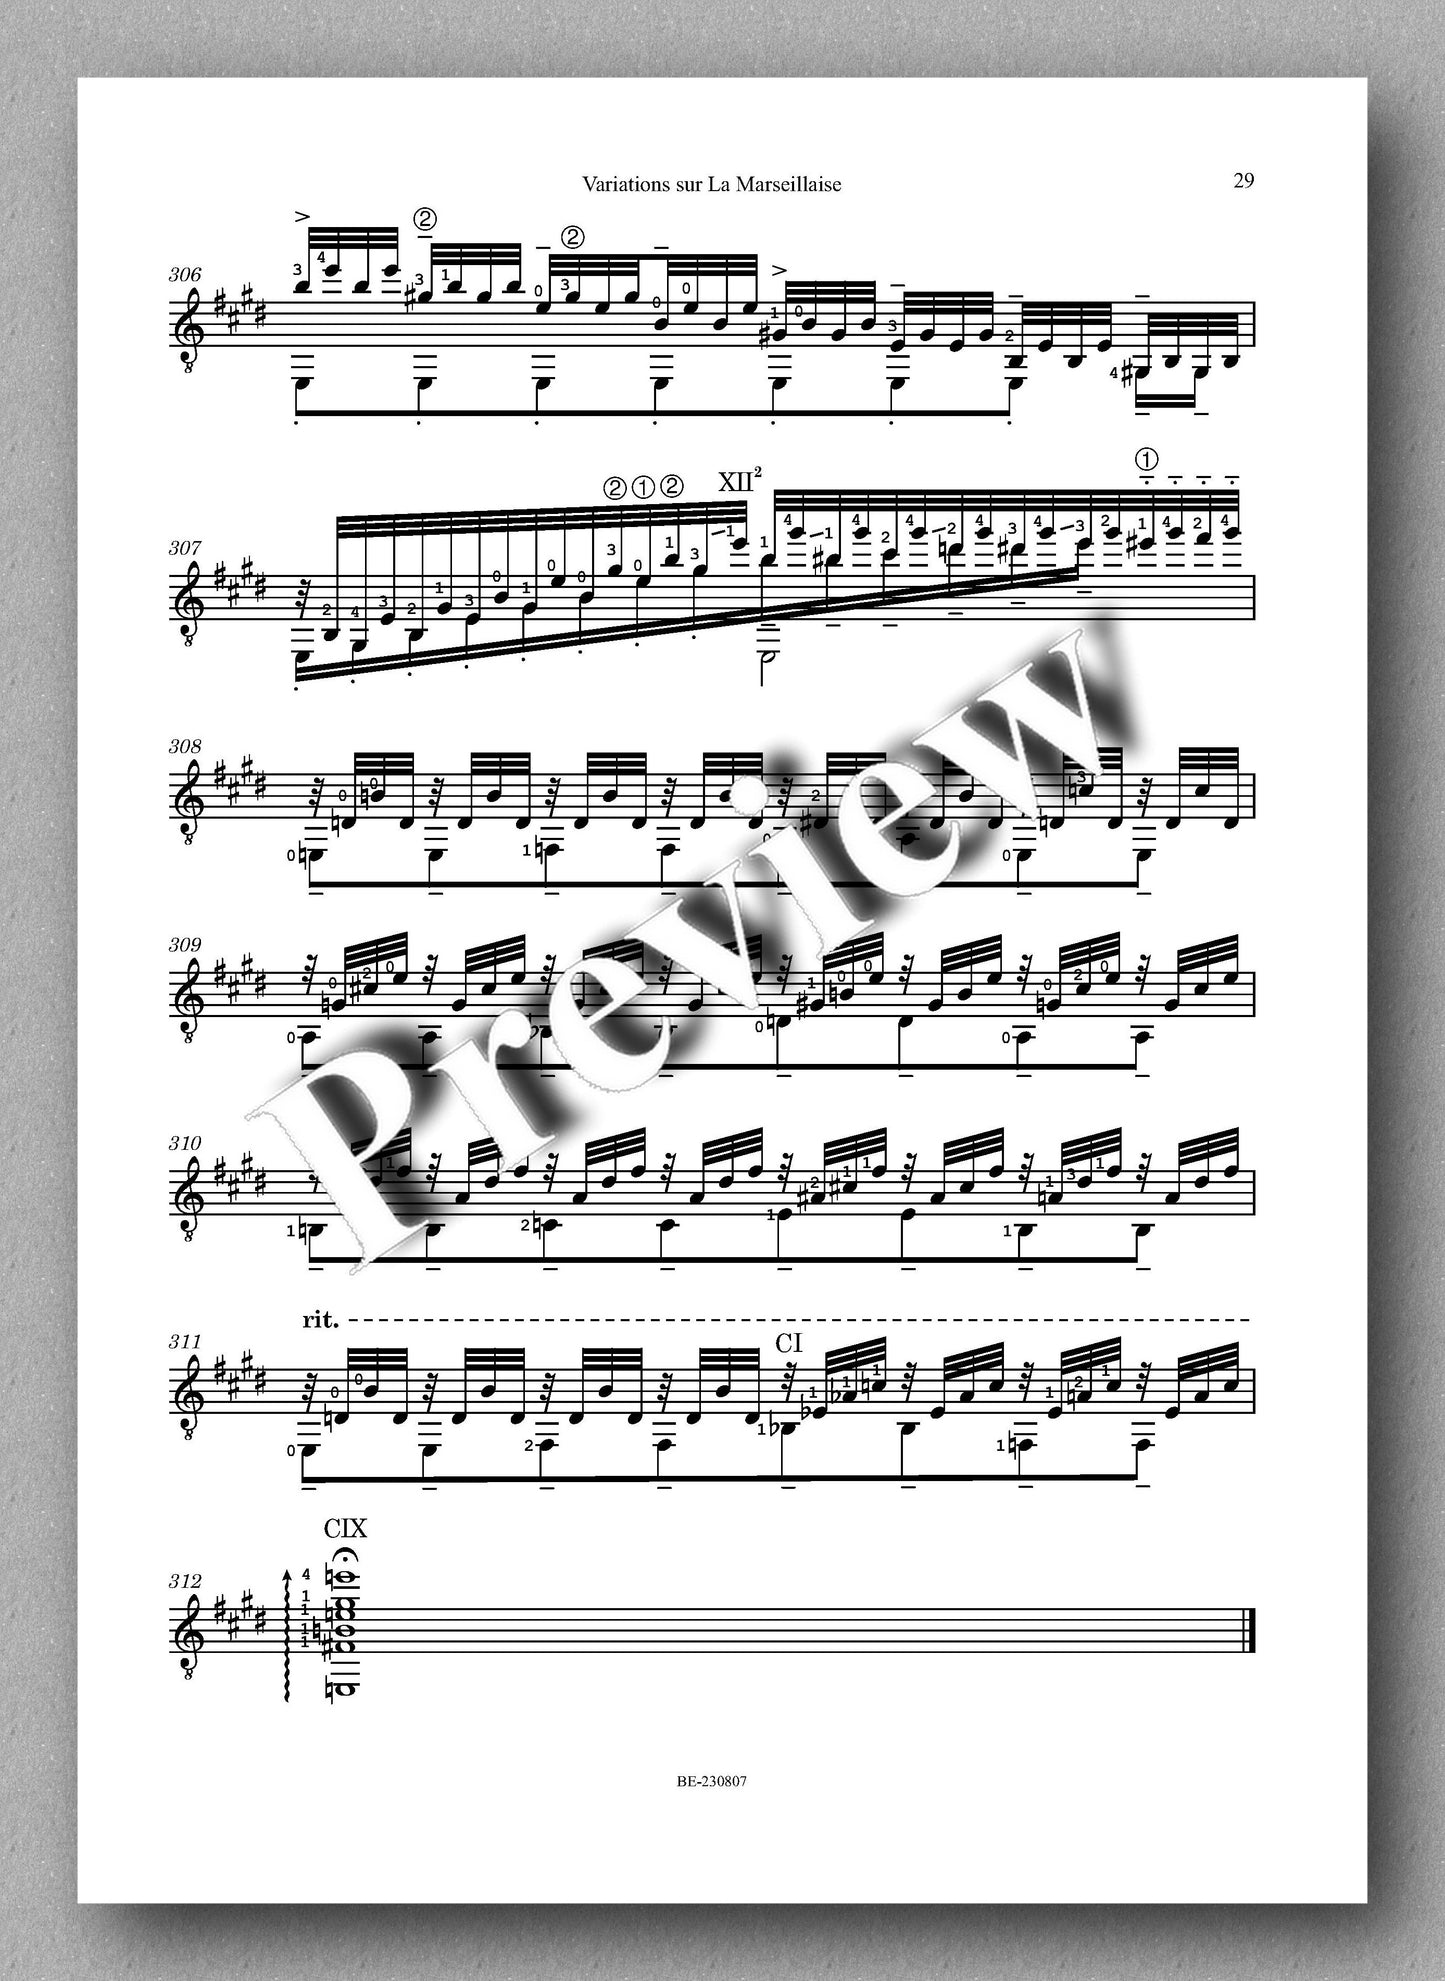 Colette Mourey, Variations sur La Marseillaise - preview of the music score 6